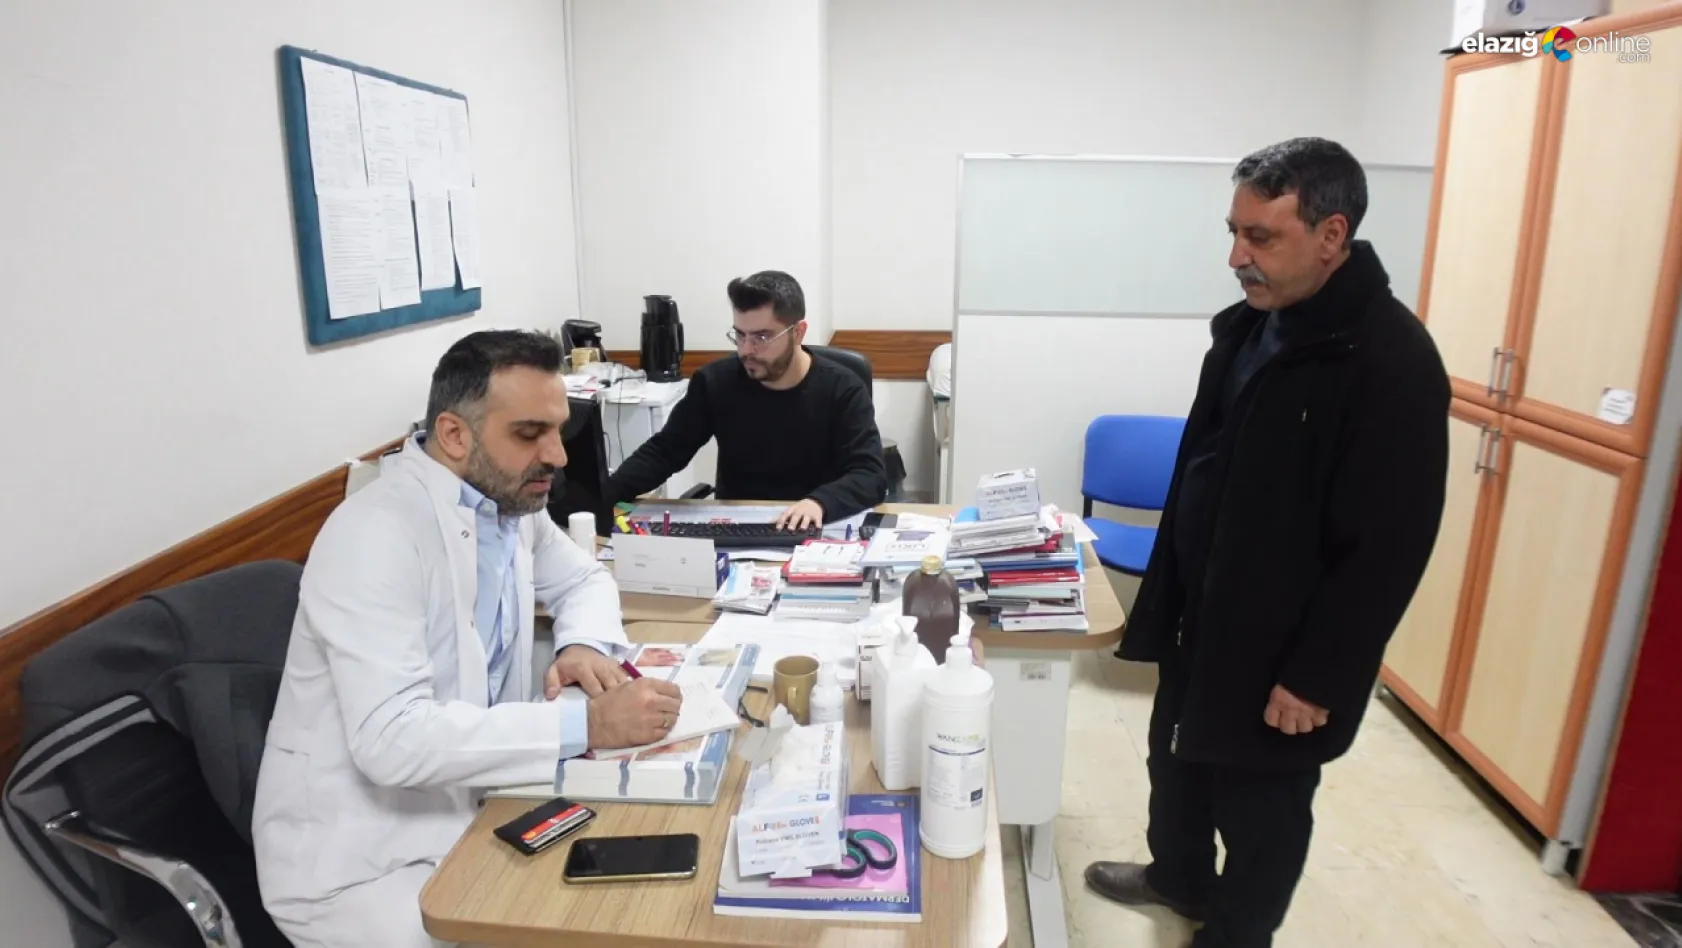 Dr. Öğretim Üyesi Mustafa Esen sedef hastalığı hakkında bilgilendiriyor!